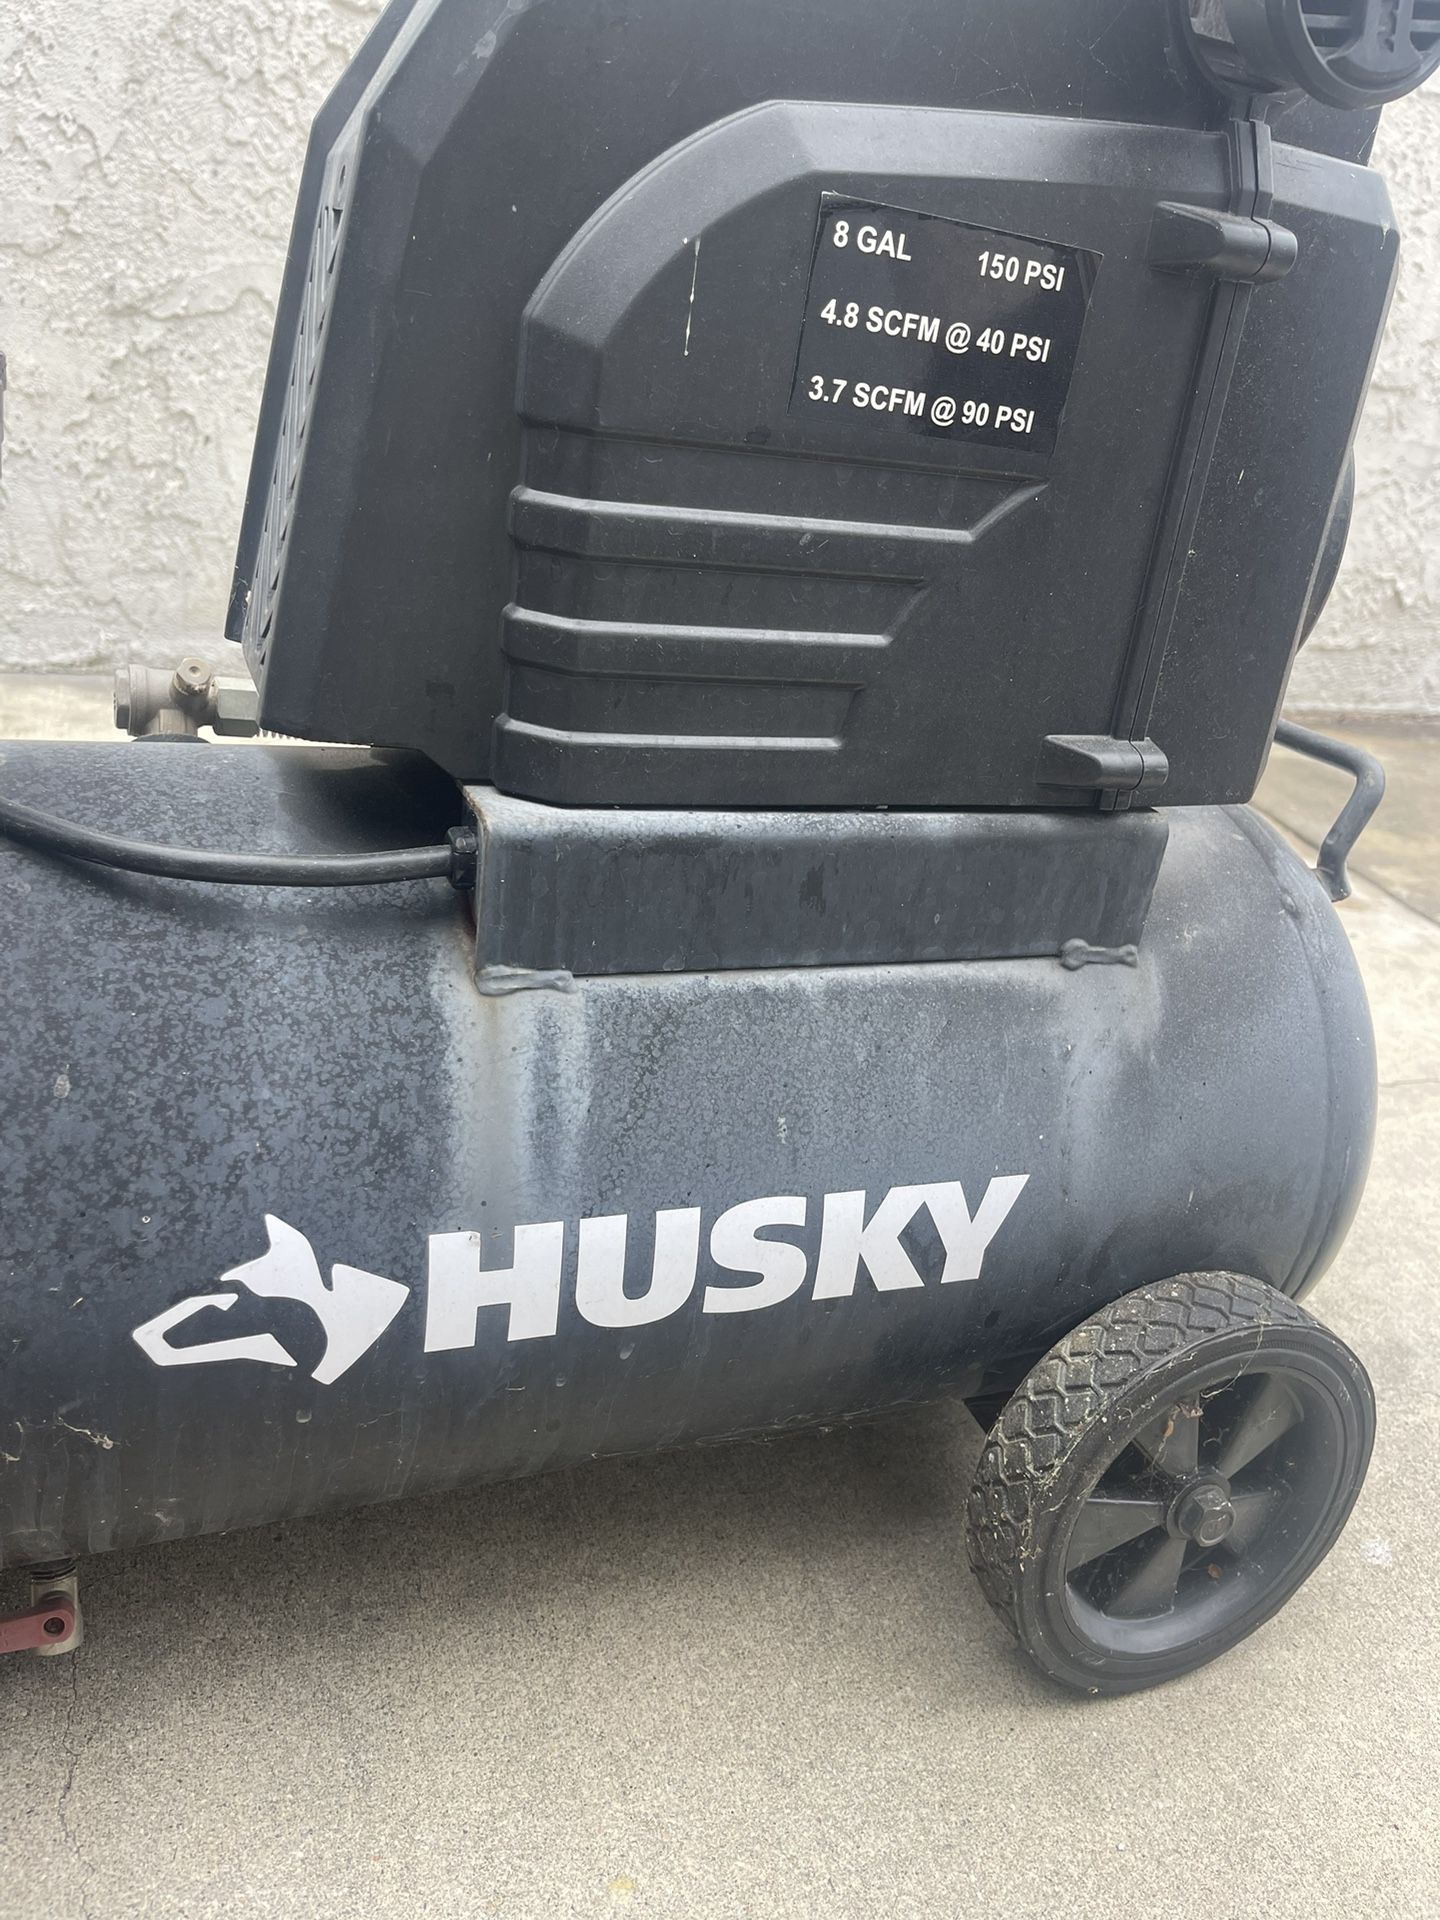 Husky Air compressor